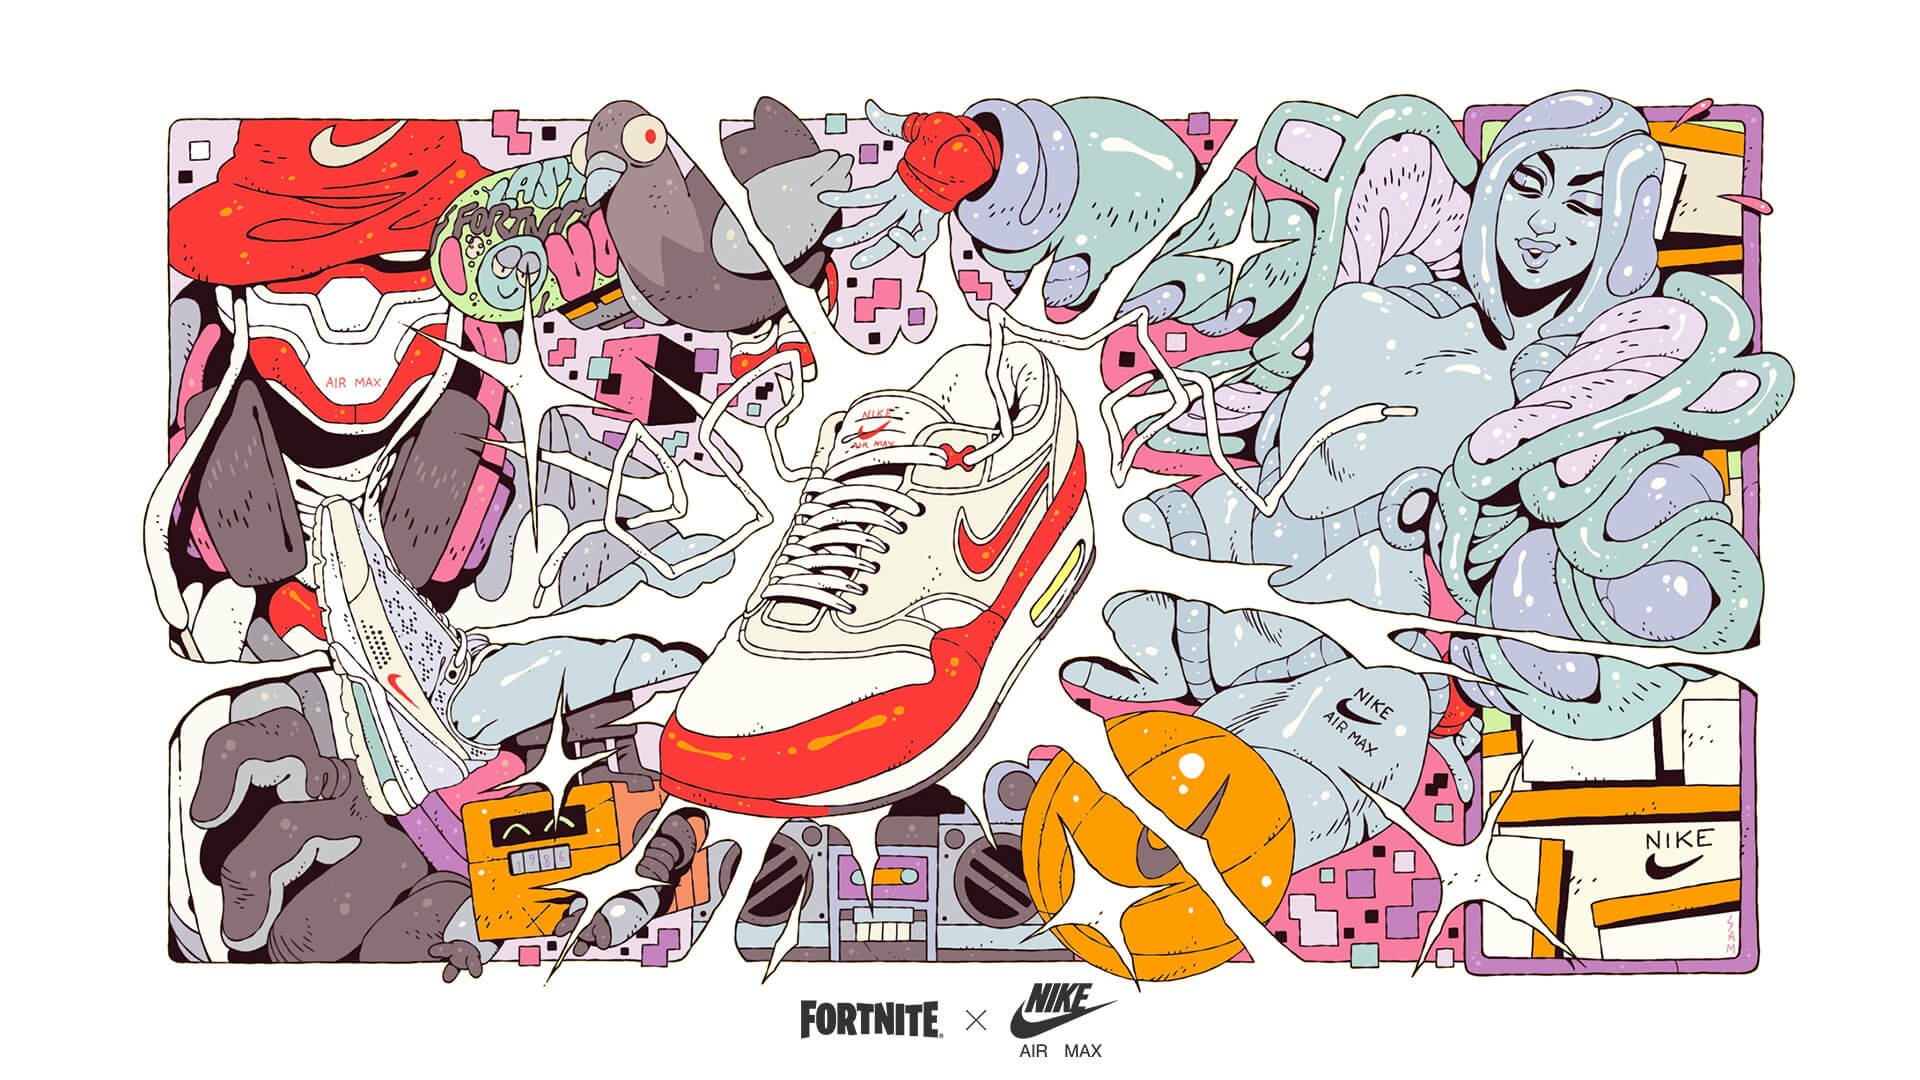 Nike, Fortnite